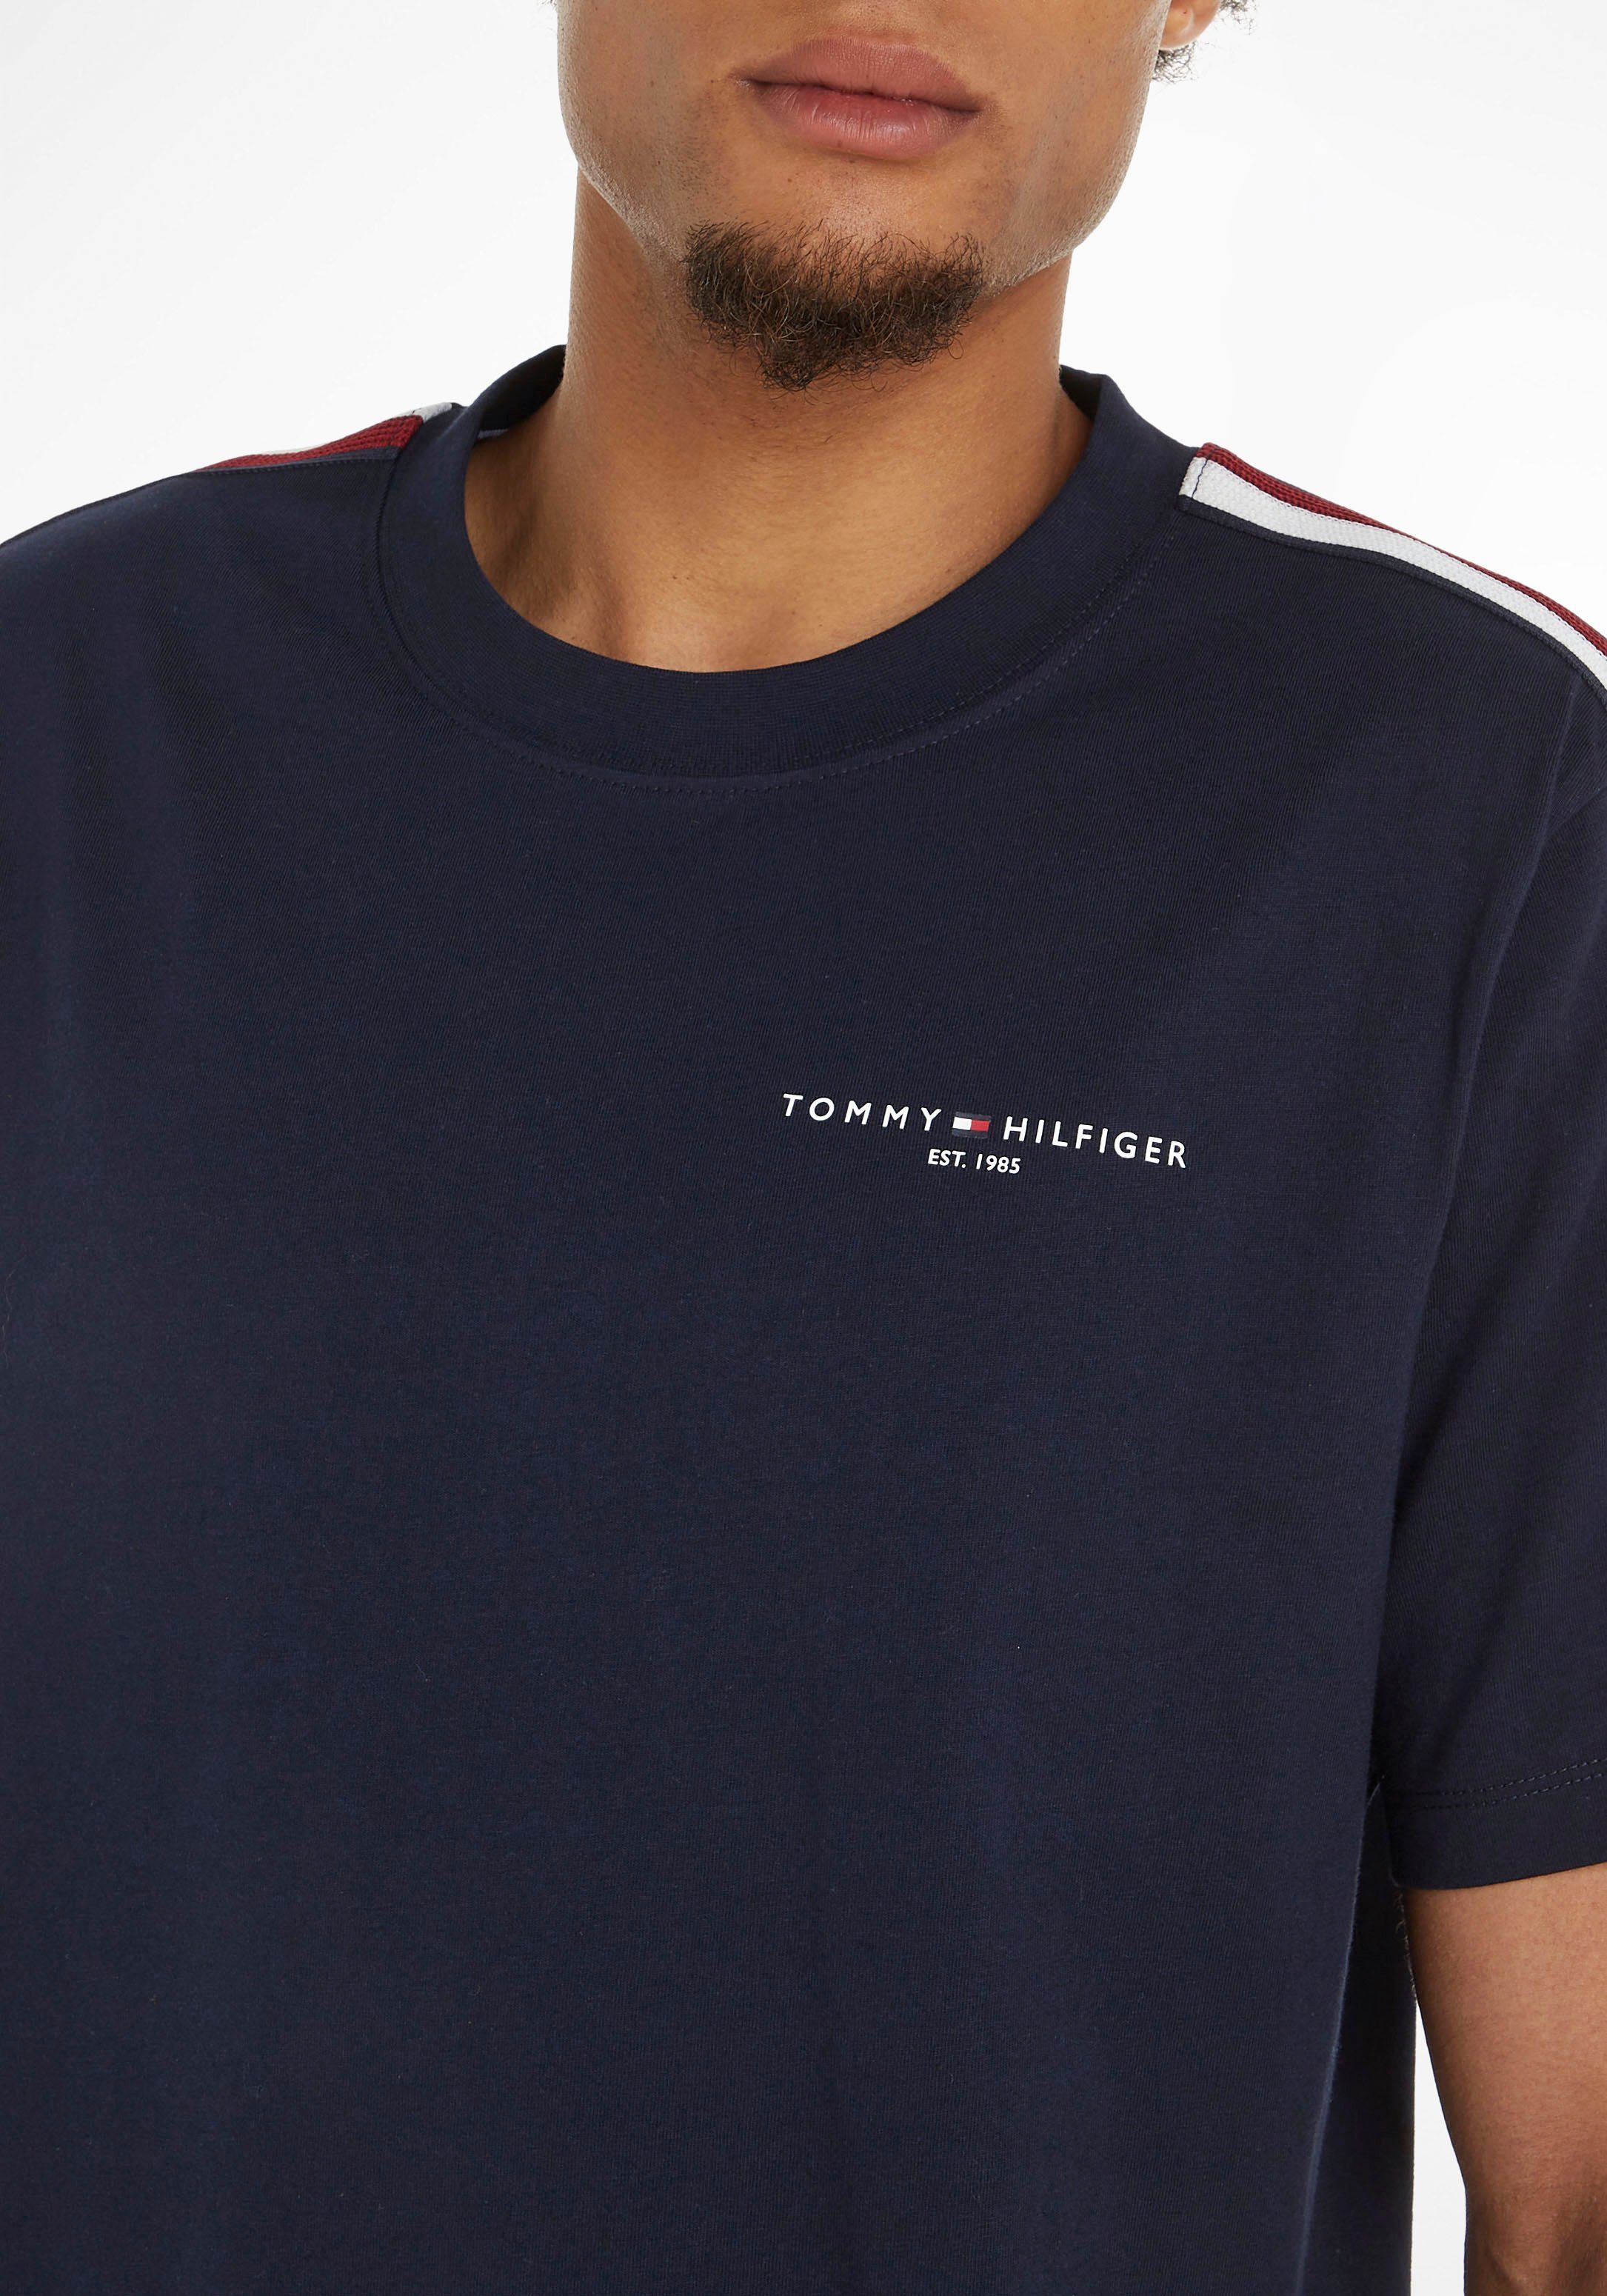 STRIPE Tommy beiden Streifen Rundhalsshirt TH-Farben Hilfiger TEE Desert in an Ärmeln GLOBAL PREP Sky mit